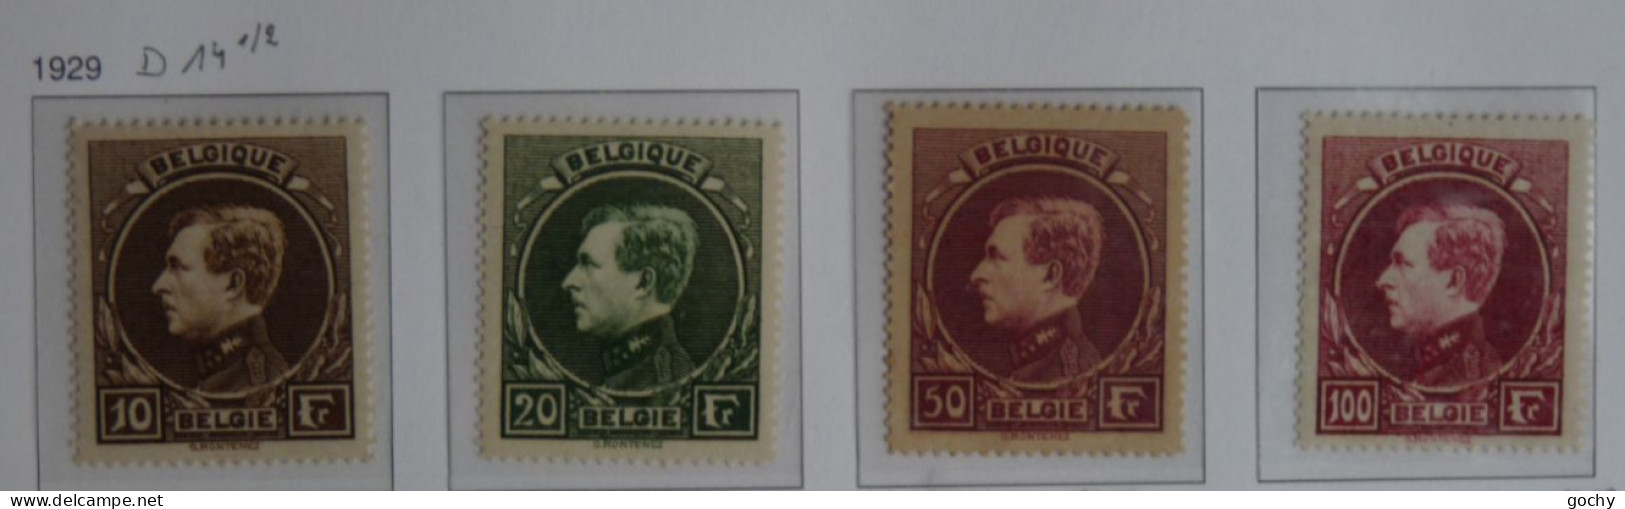 Belgium    N° 289 / 292   *  1929  Cat: 240 €      D14 1/2 - 1929-1941 Groot Montenez